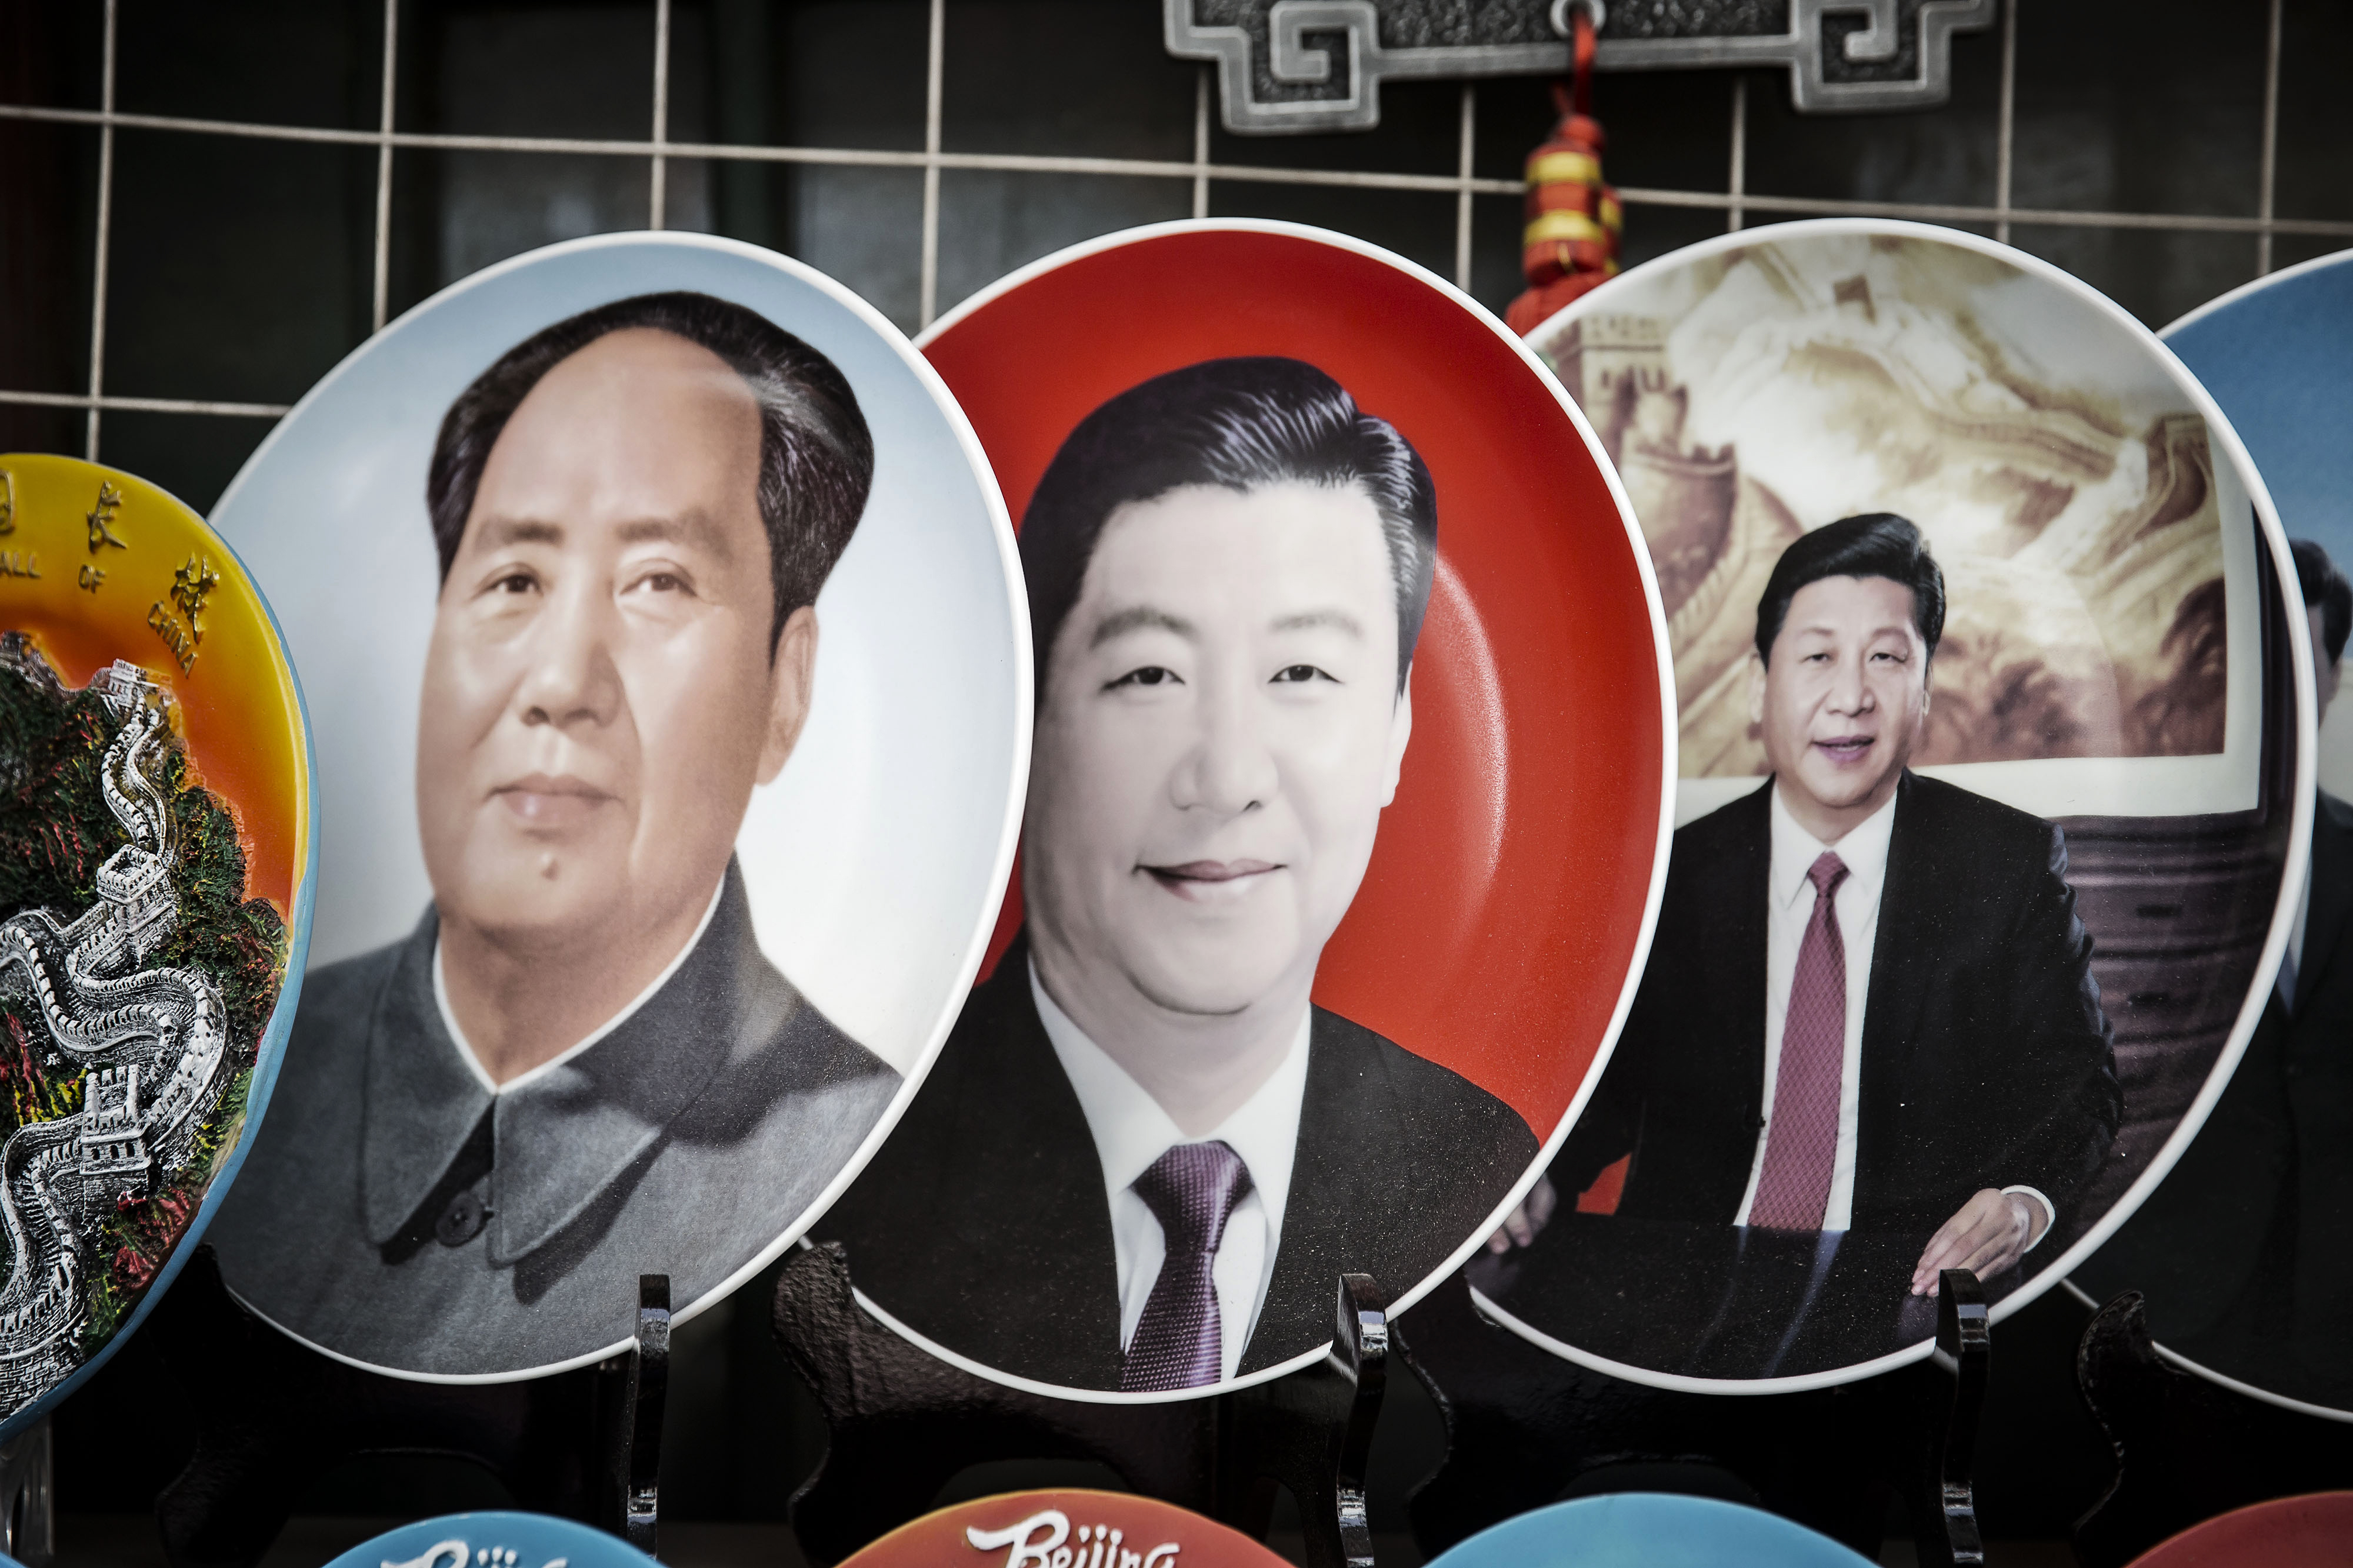 Xi Jinping is no Mao Zedong